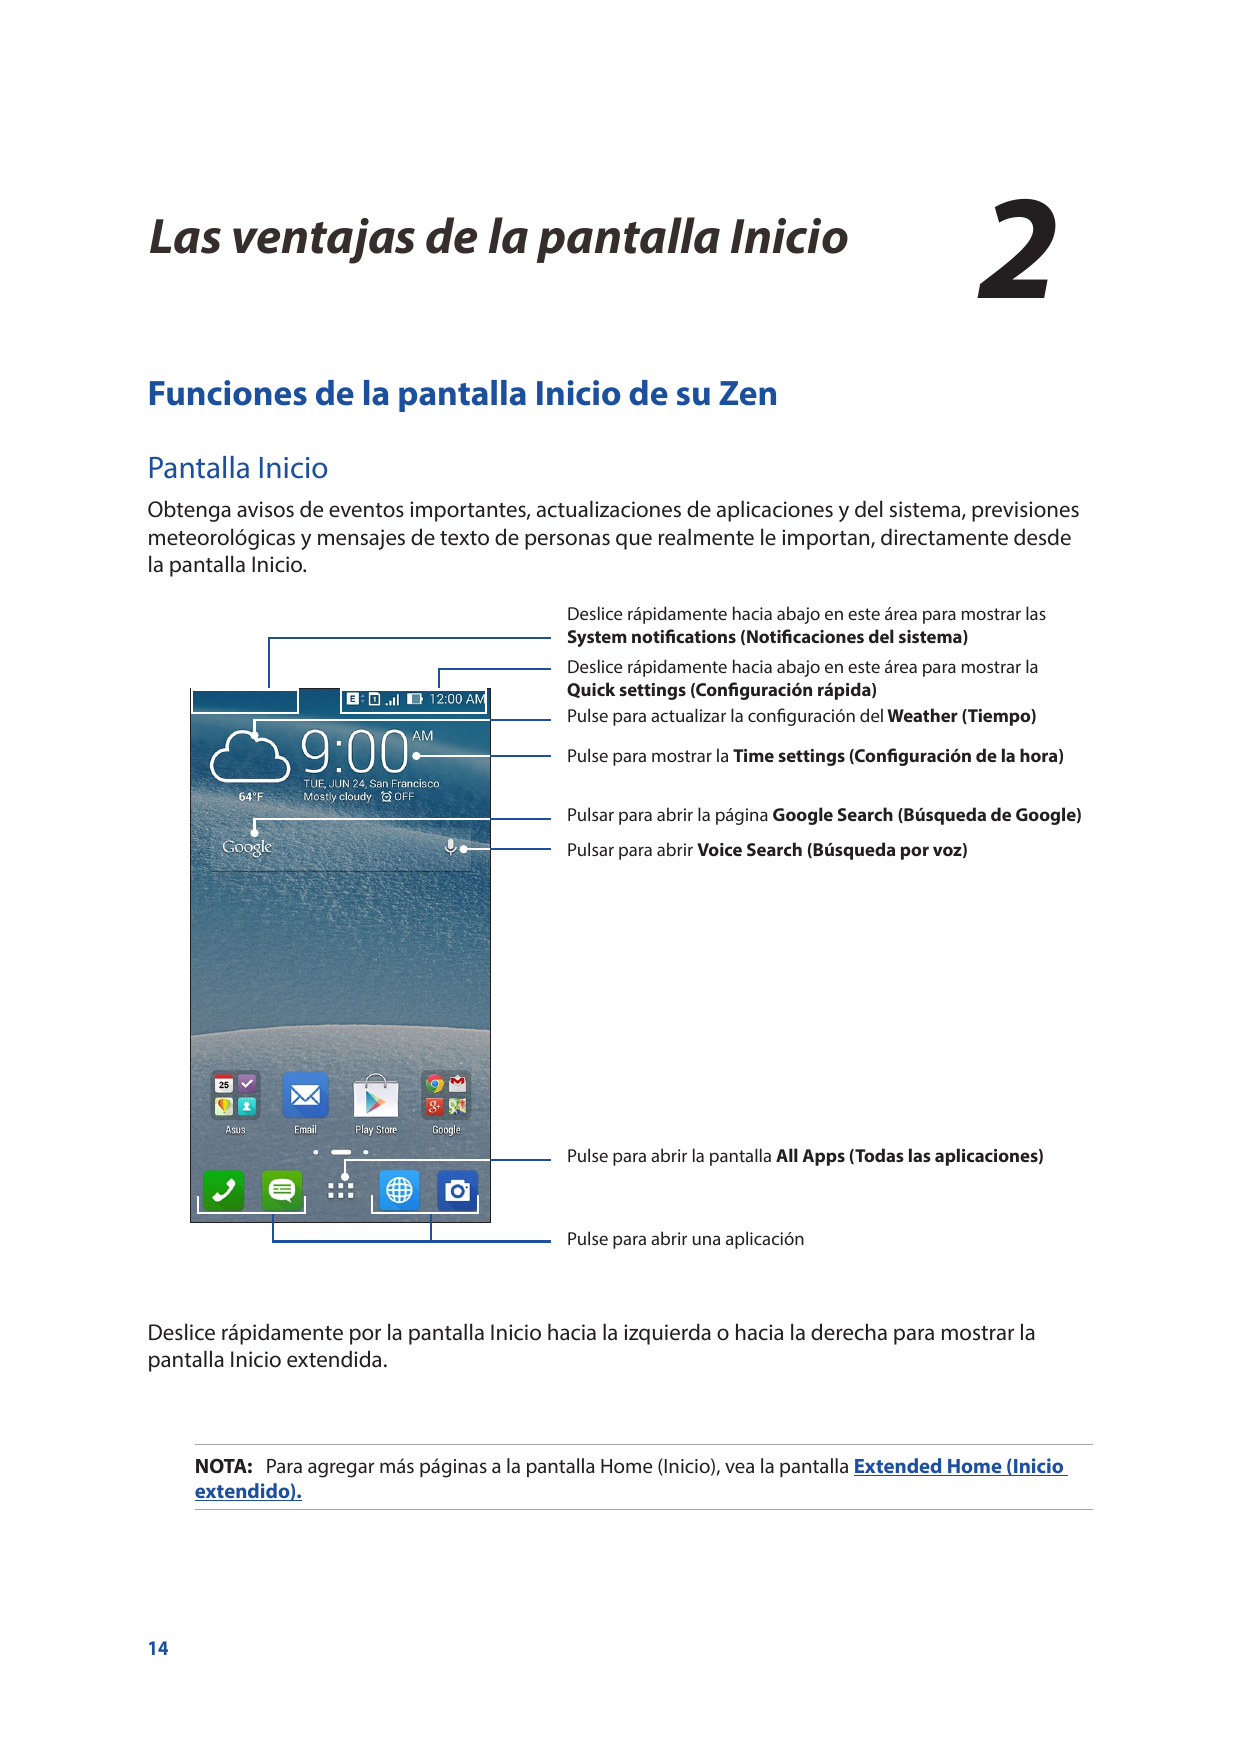 2Las ventajas de la pantalla InicioLas ventajas de la pantalla Inicio2Funciones de la pantalla Inicio de su ZenPantalla InicioOb